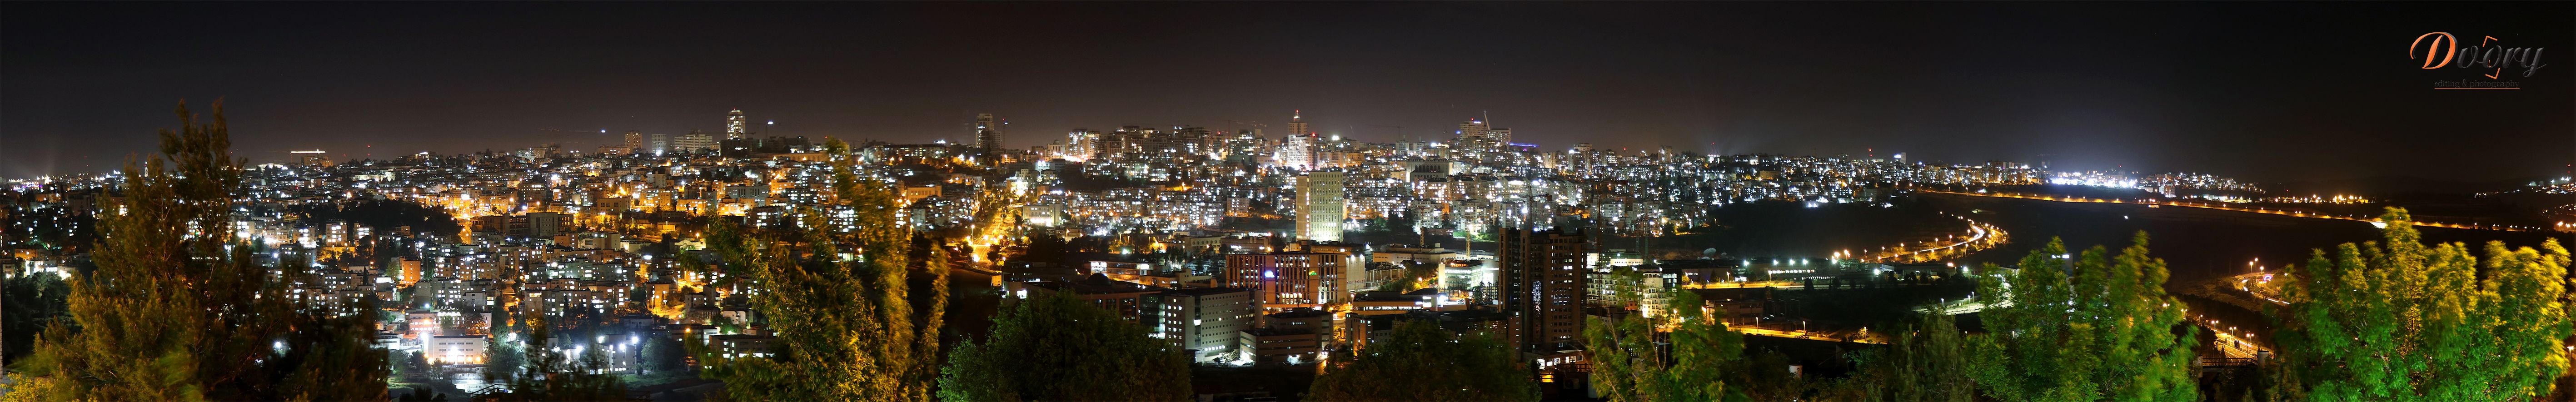 פנורמה ירושלים בלילה.jpg